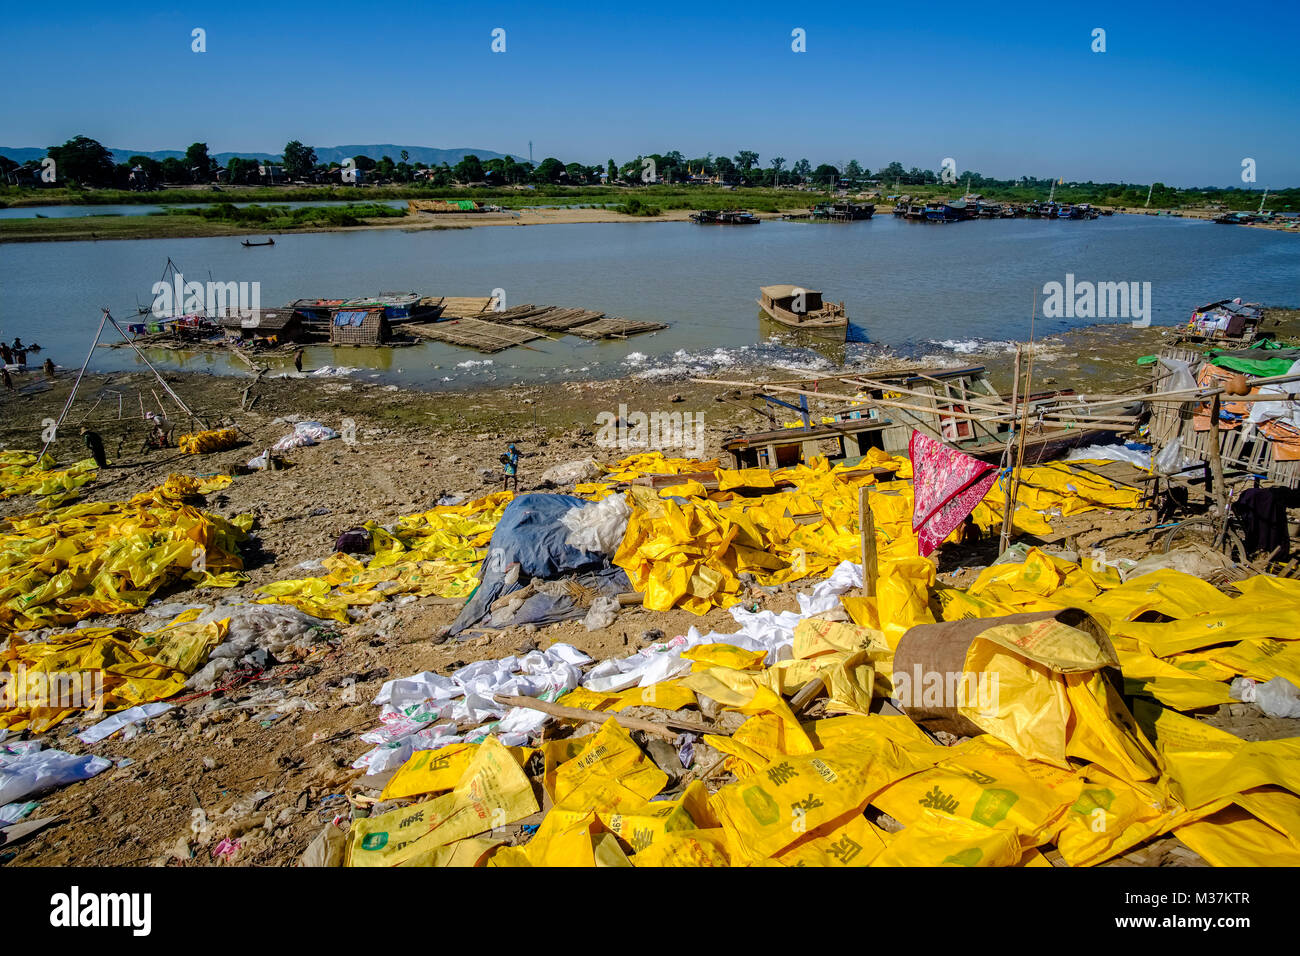 Sacchetti di plastica vengono riciclati alla periferia della città nei pressi del fiume Irrawaddy Foto Stock